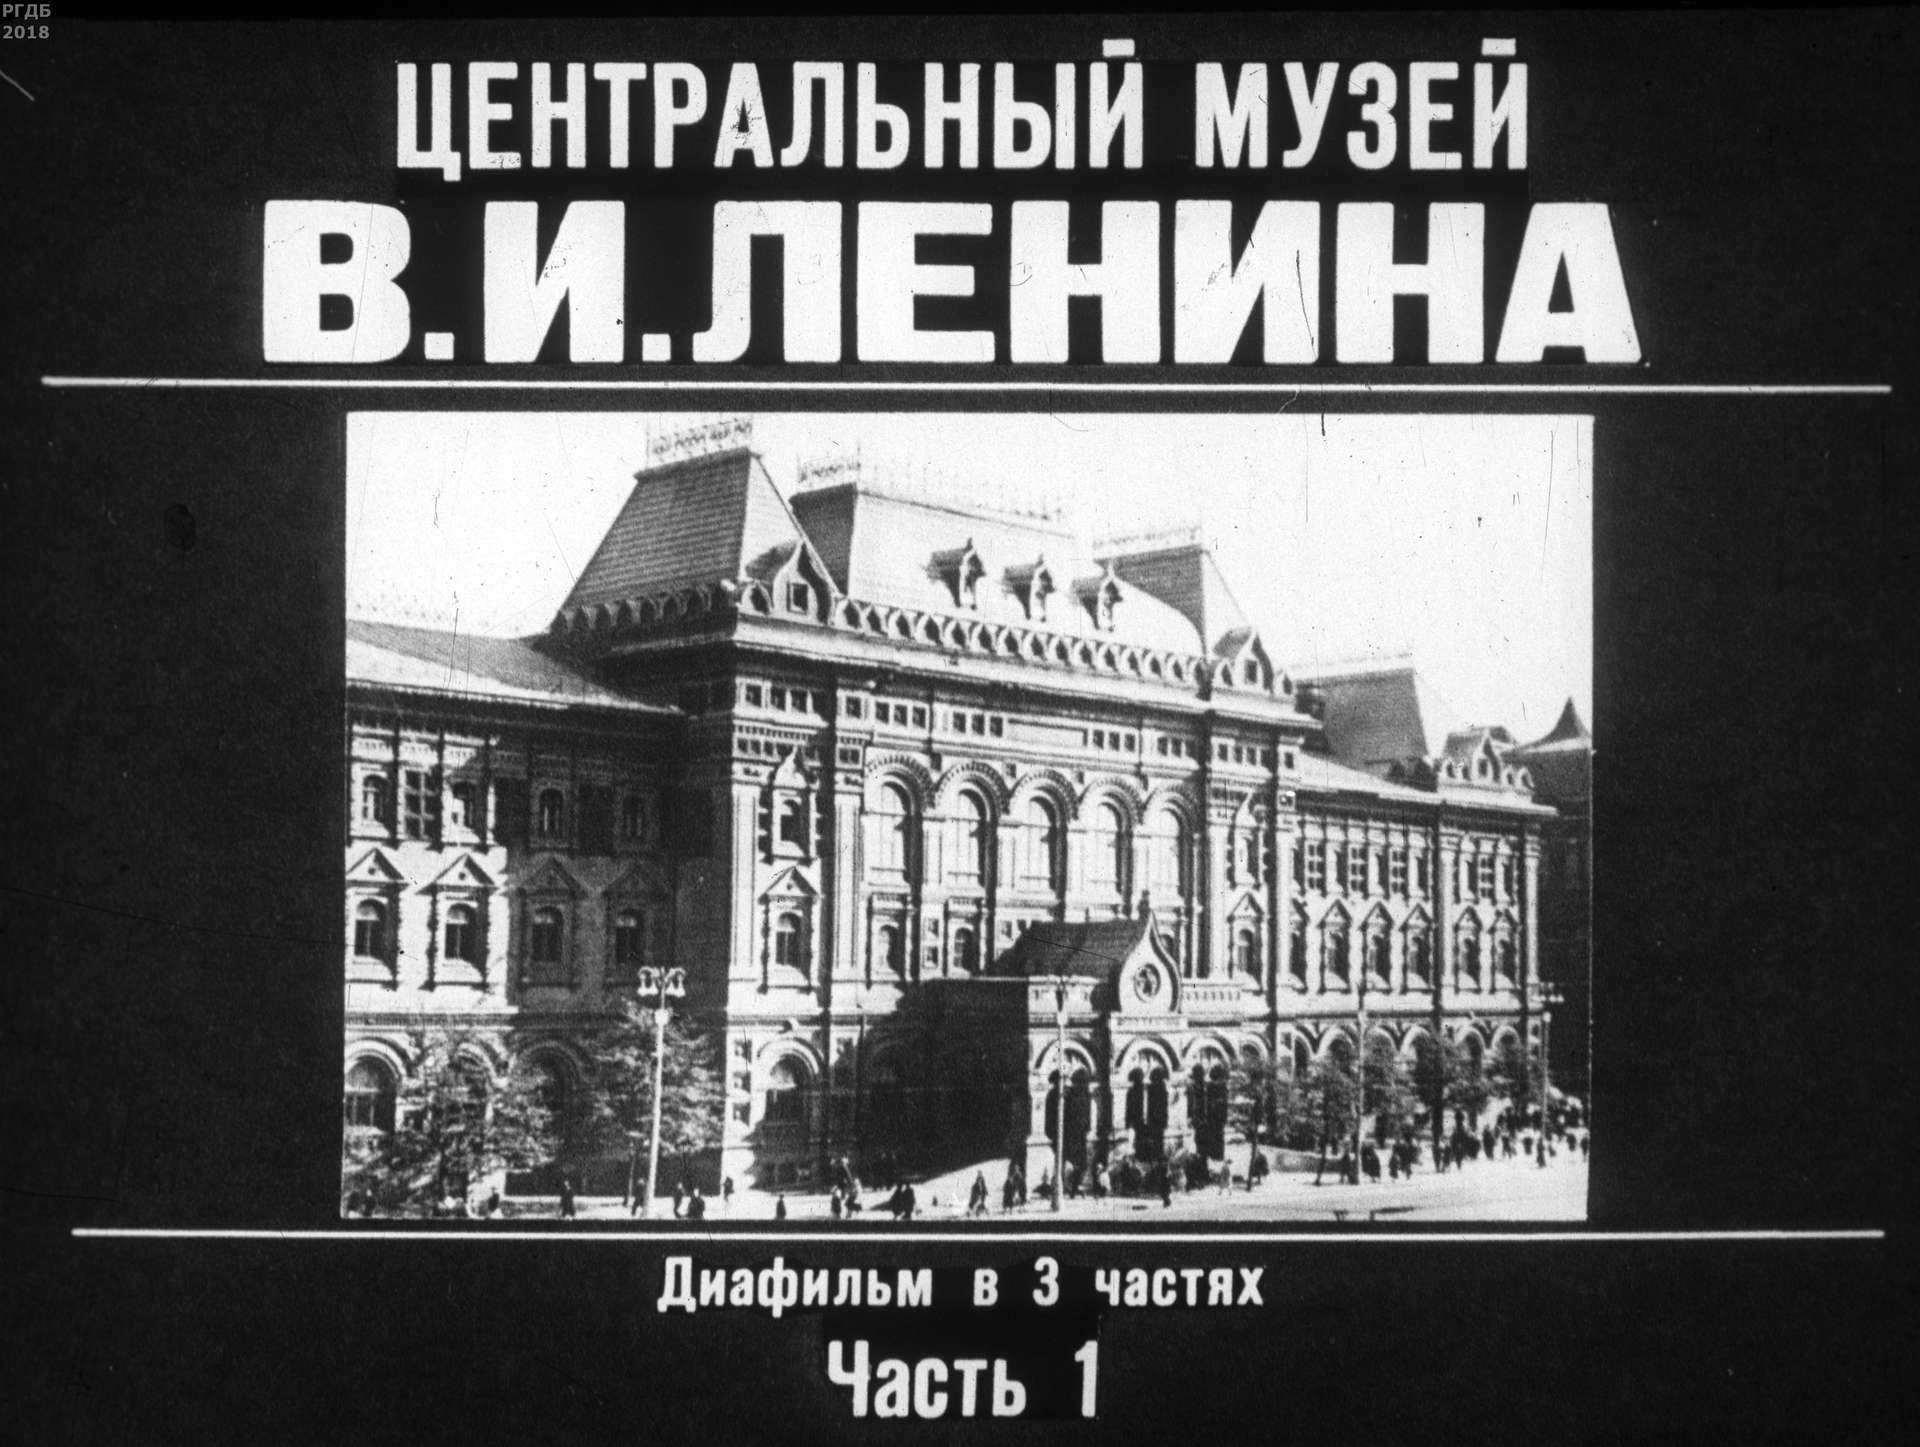 Центральный музей В. И. Ленина. Ч. 1